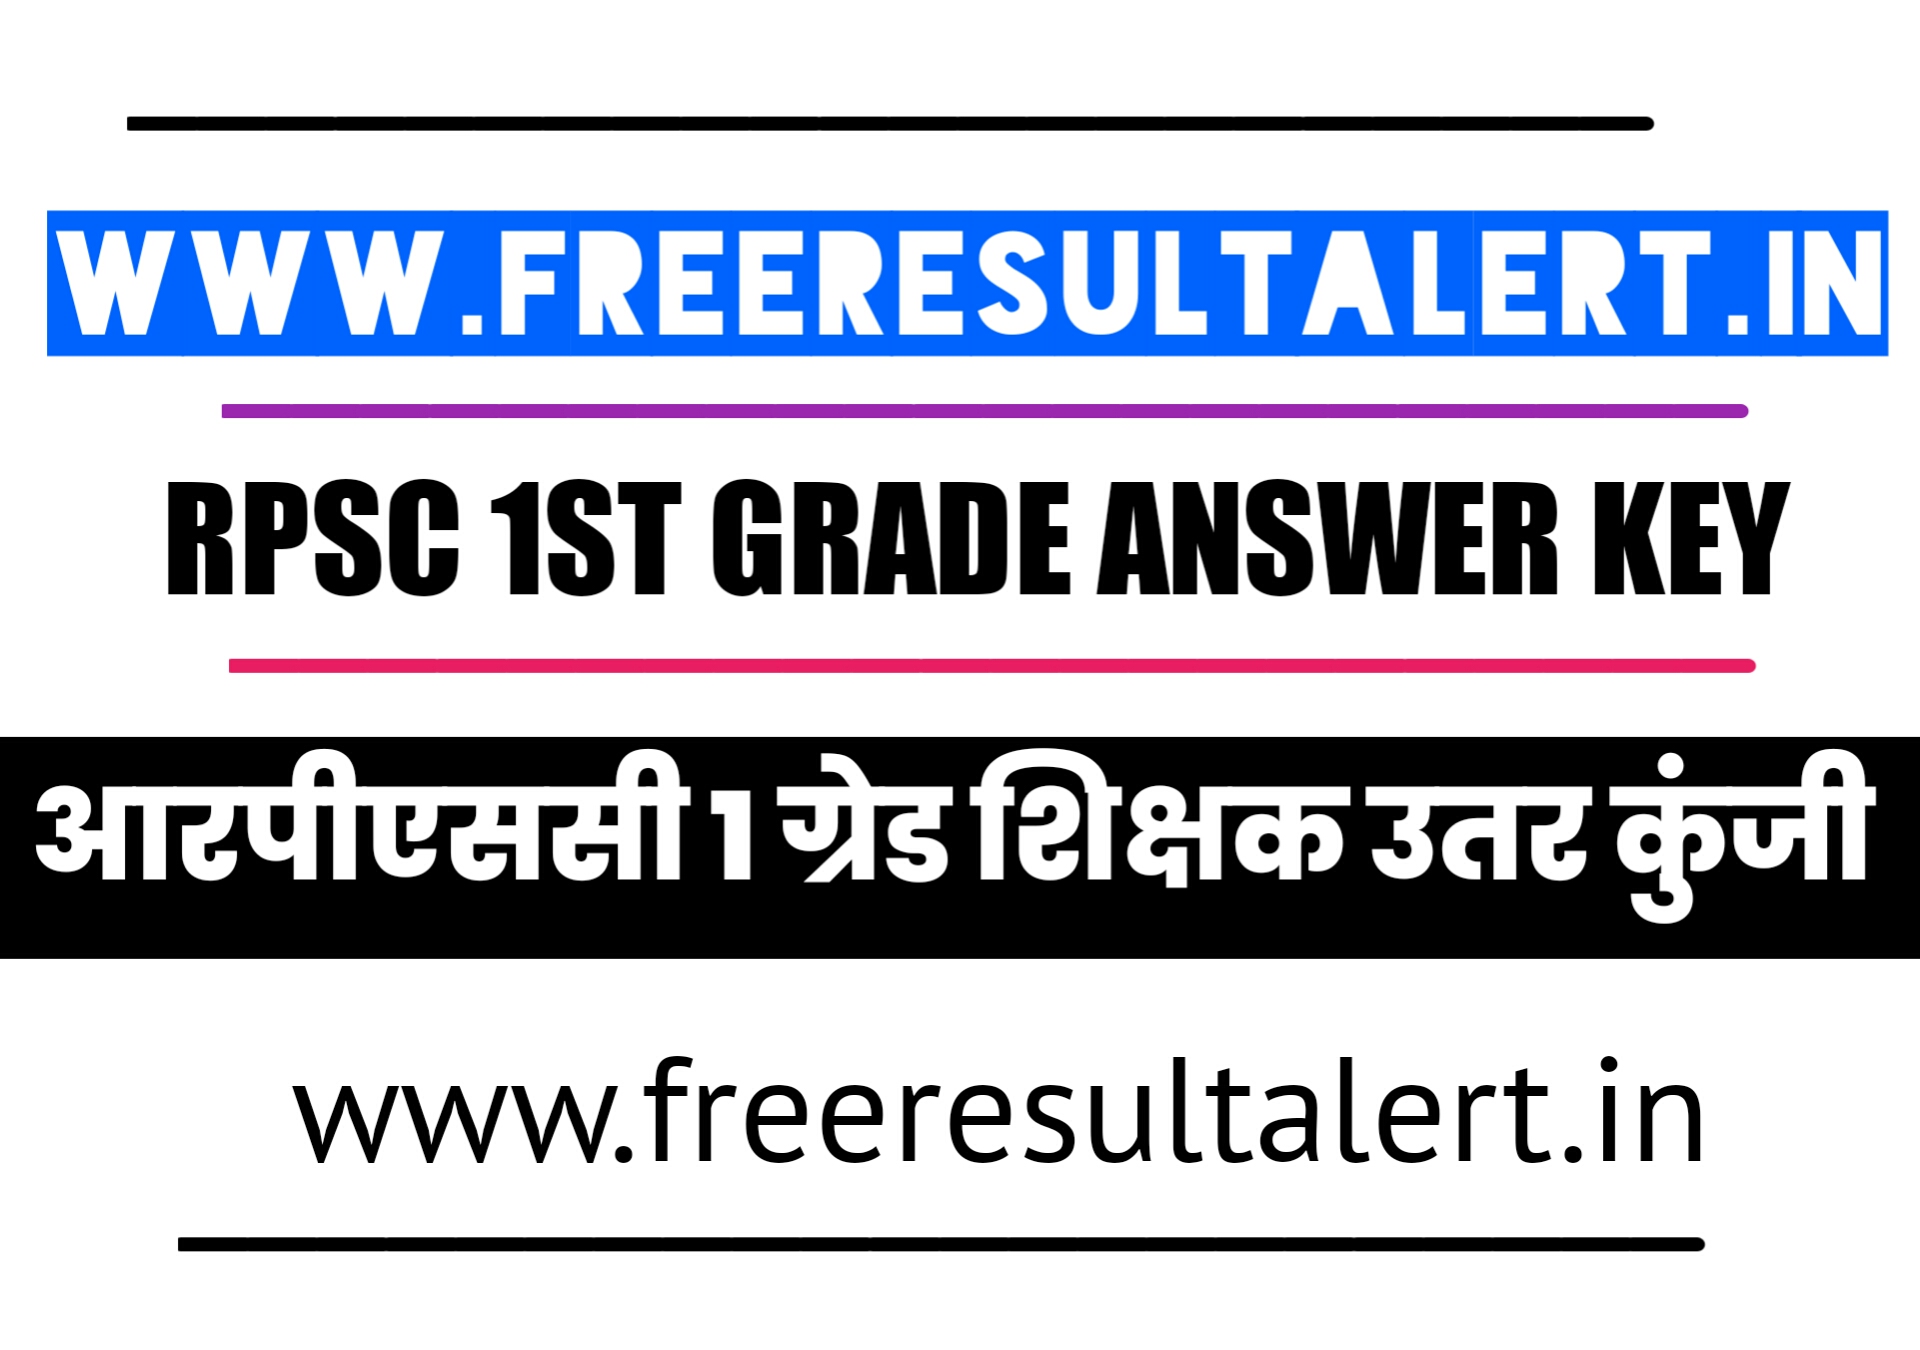 RPSC 1st Grade Sanskrit Answer key 4 January 2020